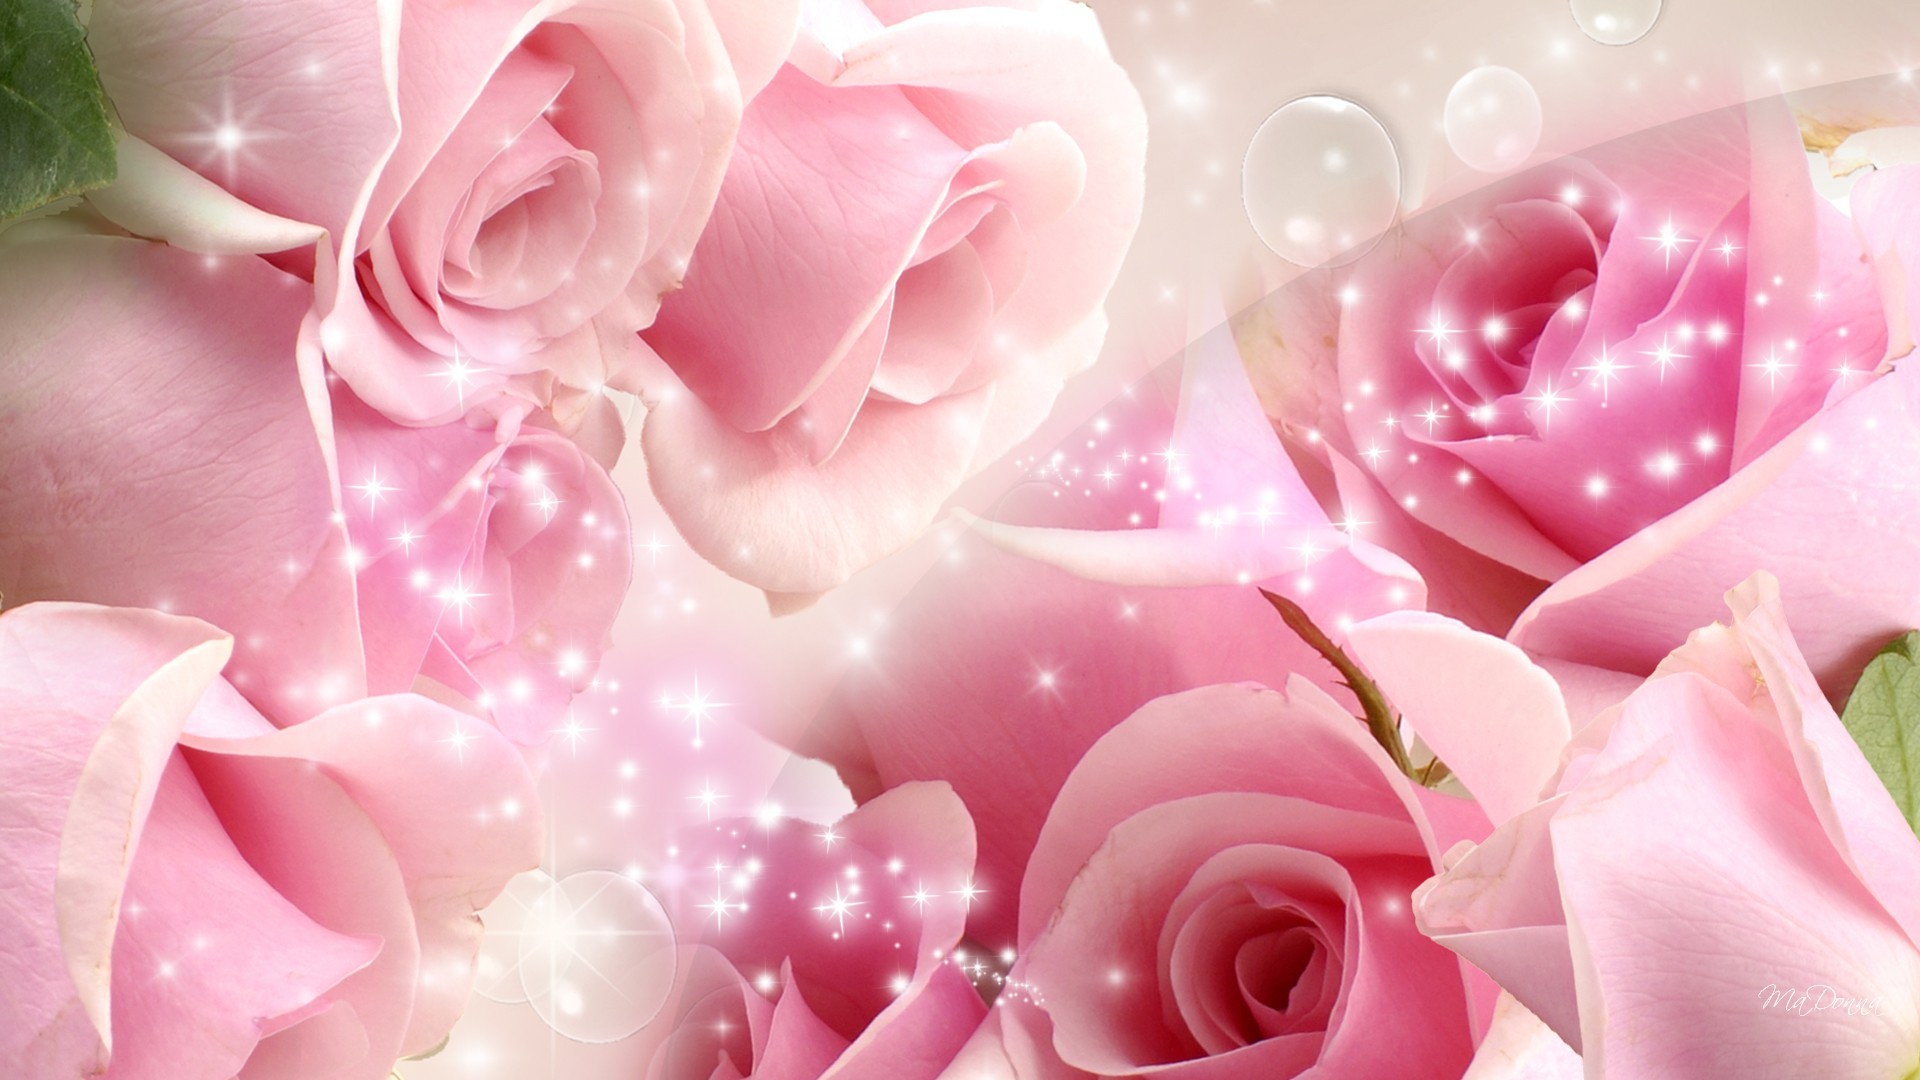 Avikalp MWZ1745 Pink Rose Flowers 3D HD Wallpaper  Avikalp International   3D Wallpapers